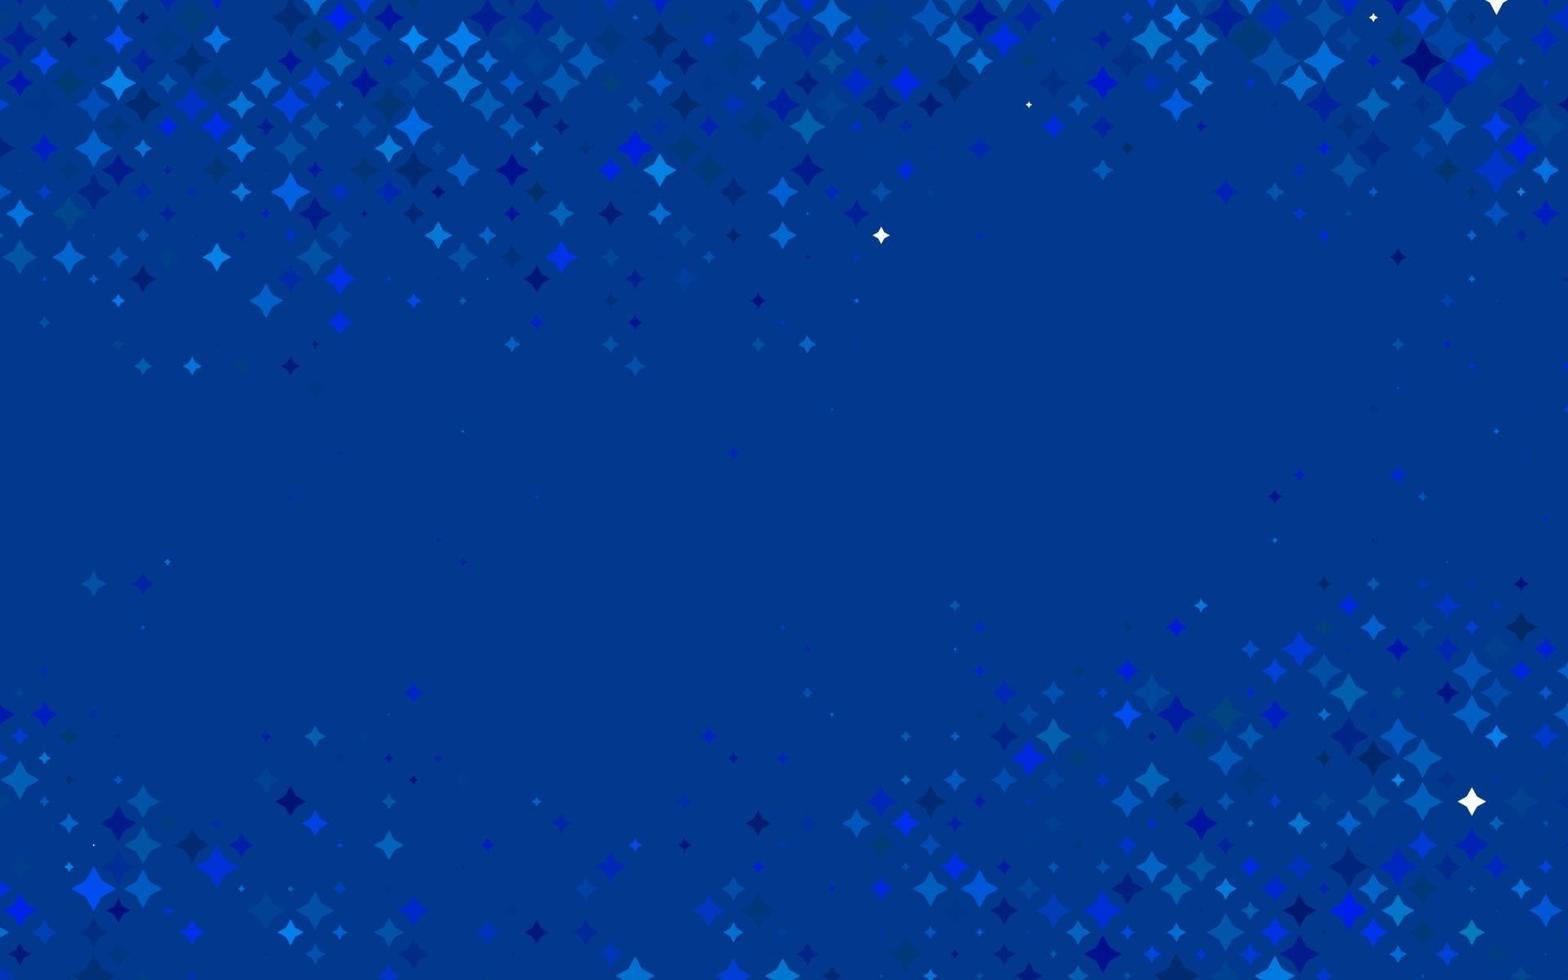 padrão de vetor azul claro com estrelas de Natal.